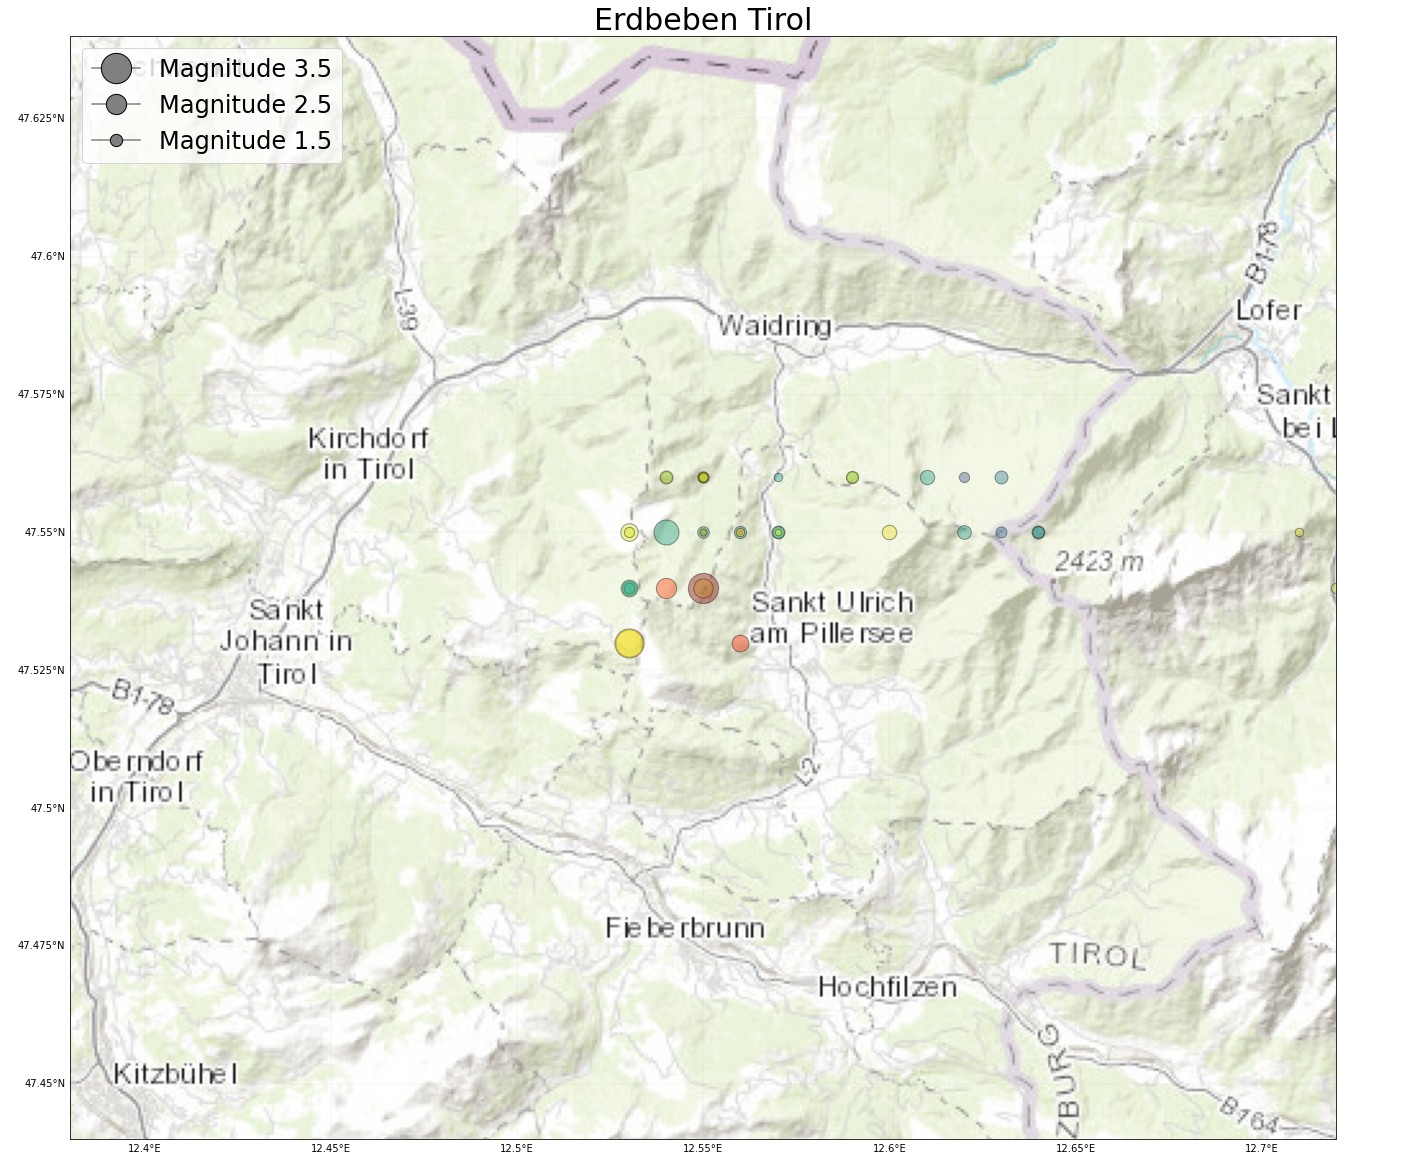 Erdbeben bei St. Johann in Tirol der letzten 14 Tage. Daten: ZAMG/Geosphere Austria